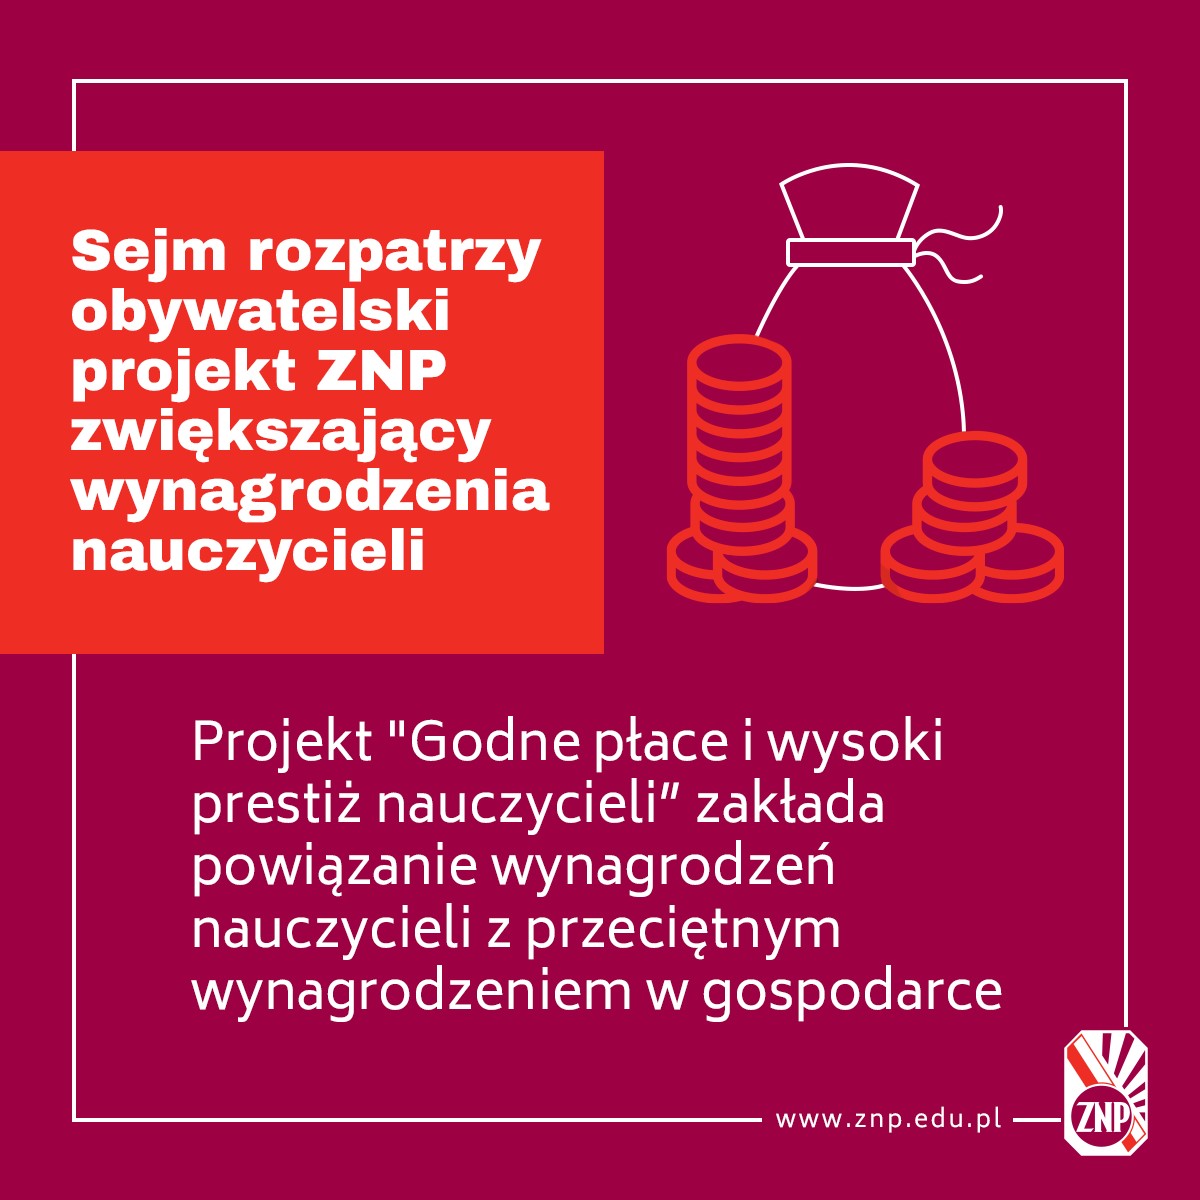 Sejm rozpatrzy obywatelski projekt ZNP zwiększający wynagrodzenia nauczycieli